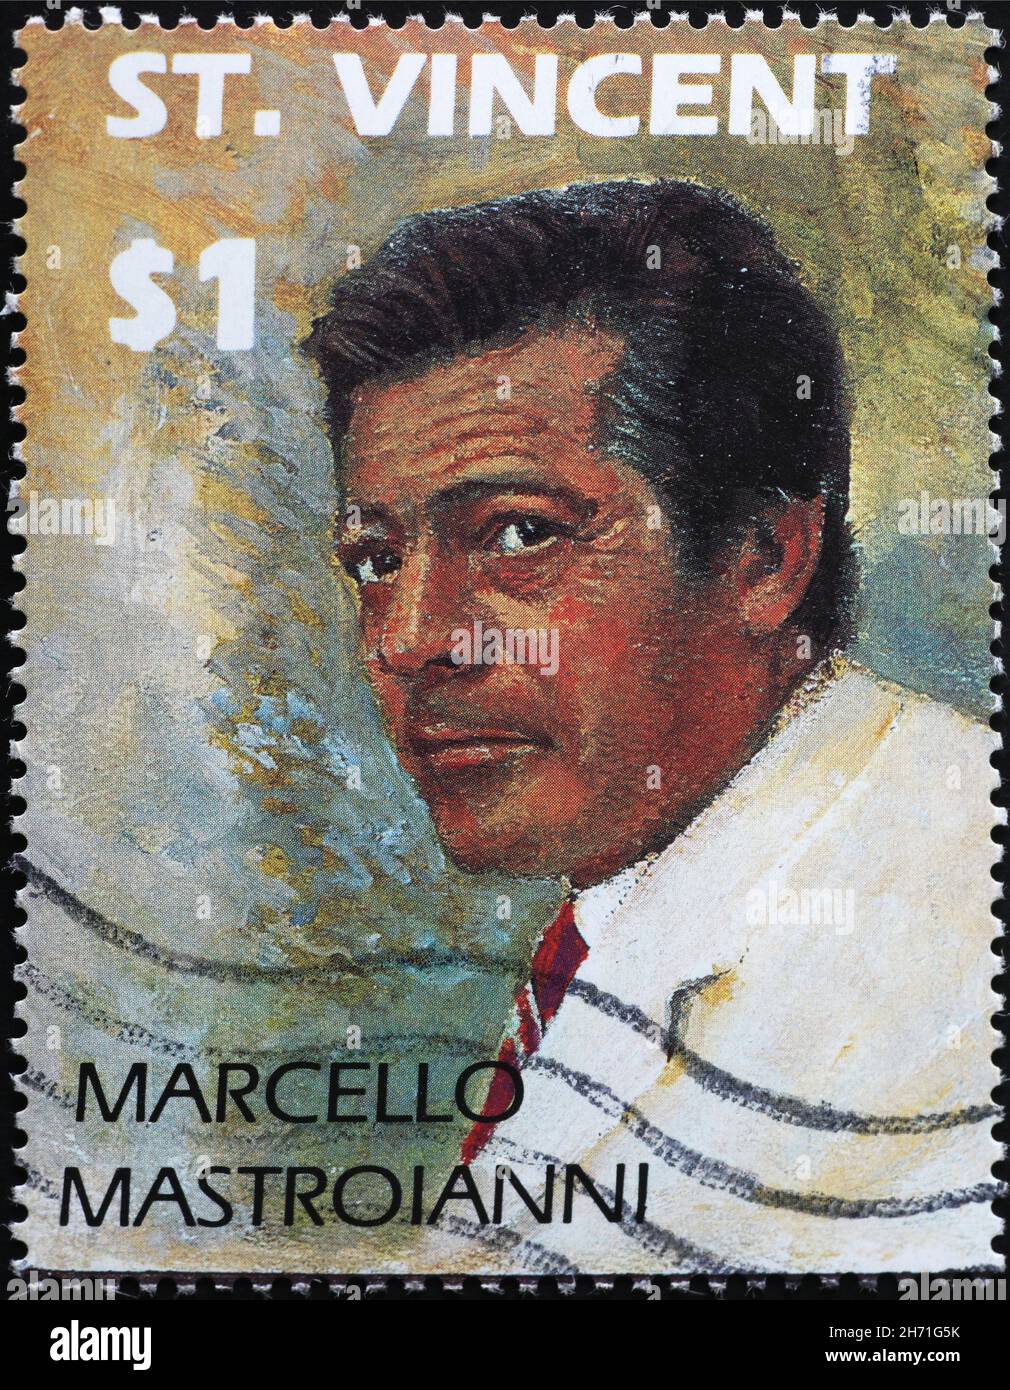 El actor italiano Marcello Mastroianni en el sello postal Foto de stock